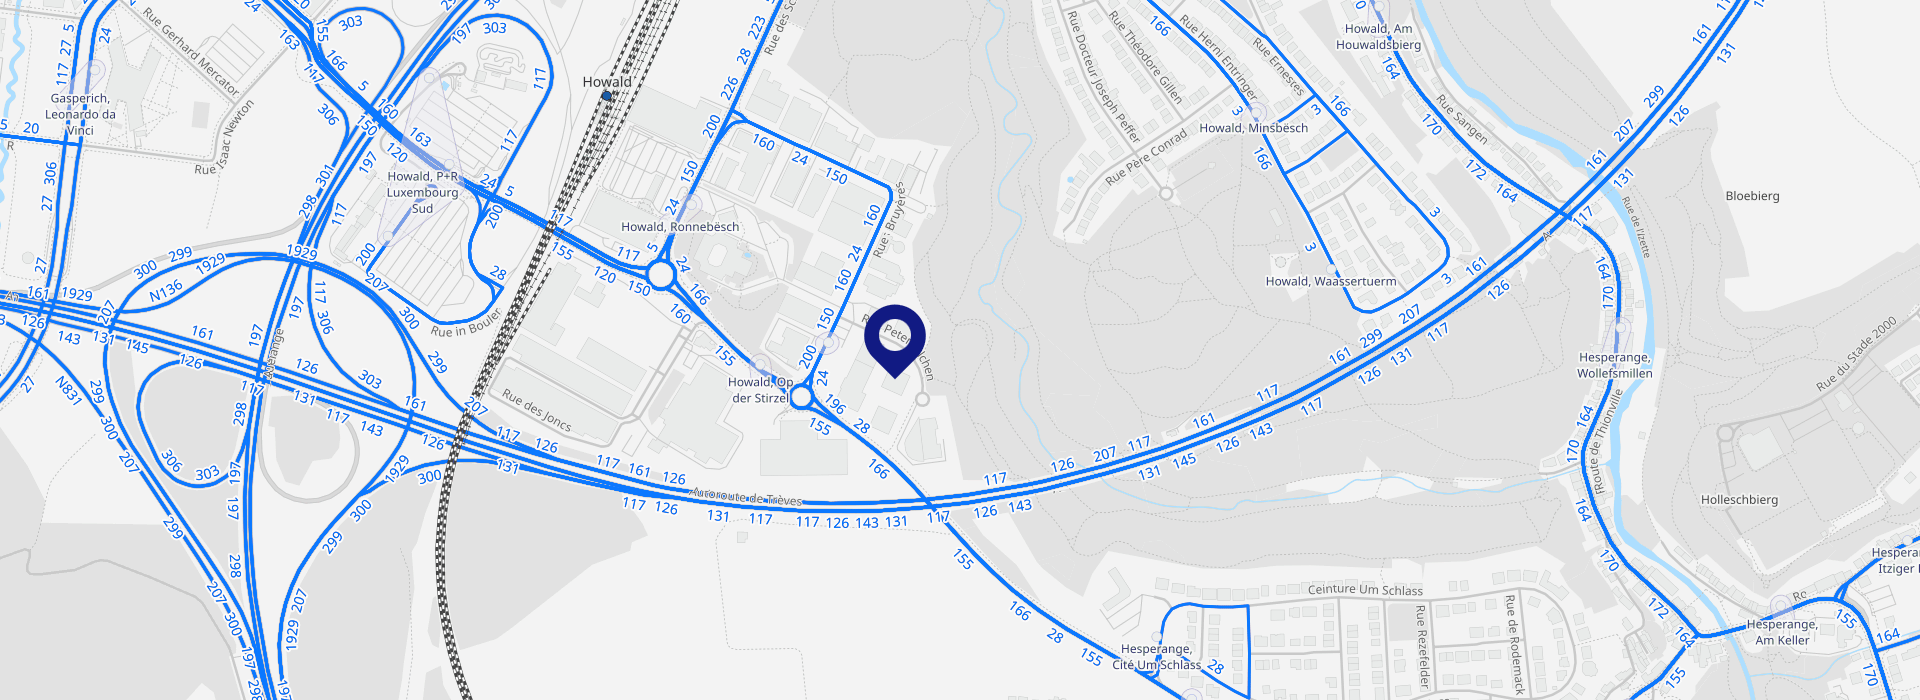 Plan d'accès de l'INFPC sur Google Maps